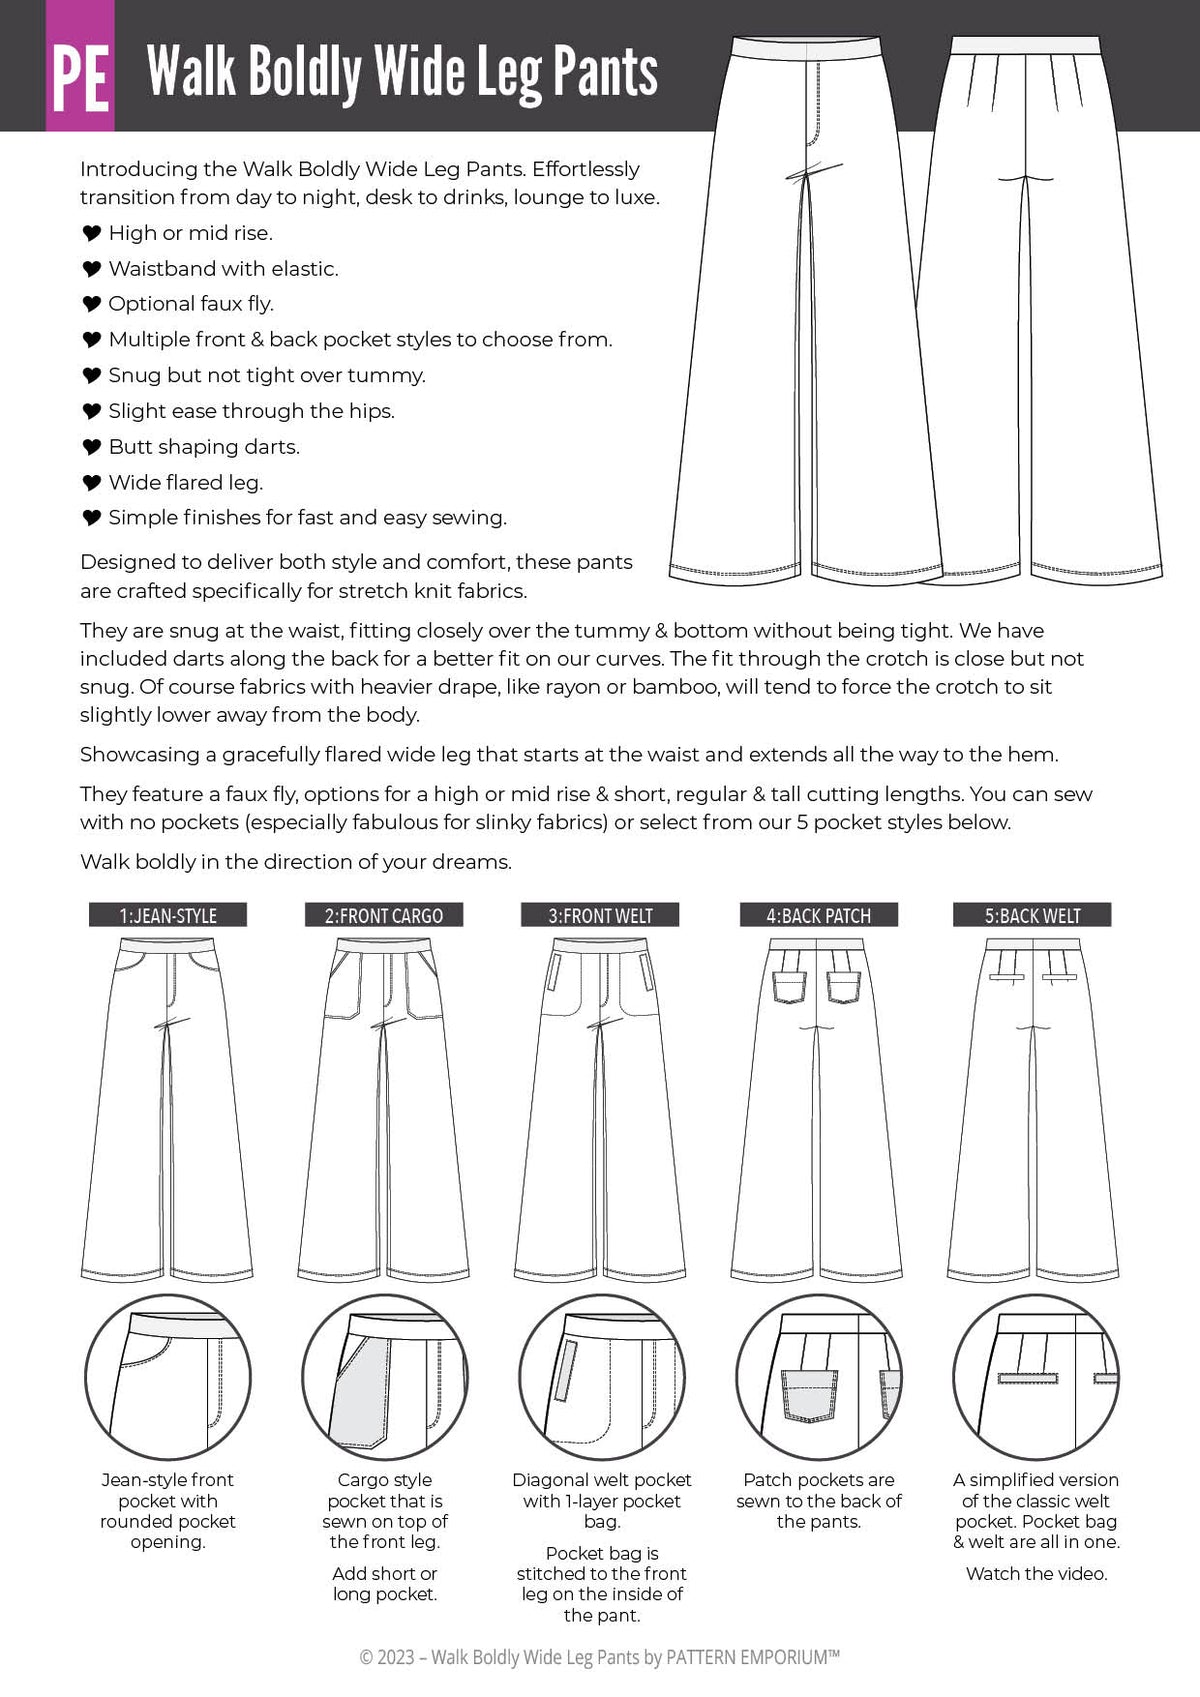 Walk Boldly Wide Leg Pants Sewing Pattern - Pattern Emporium